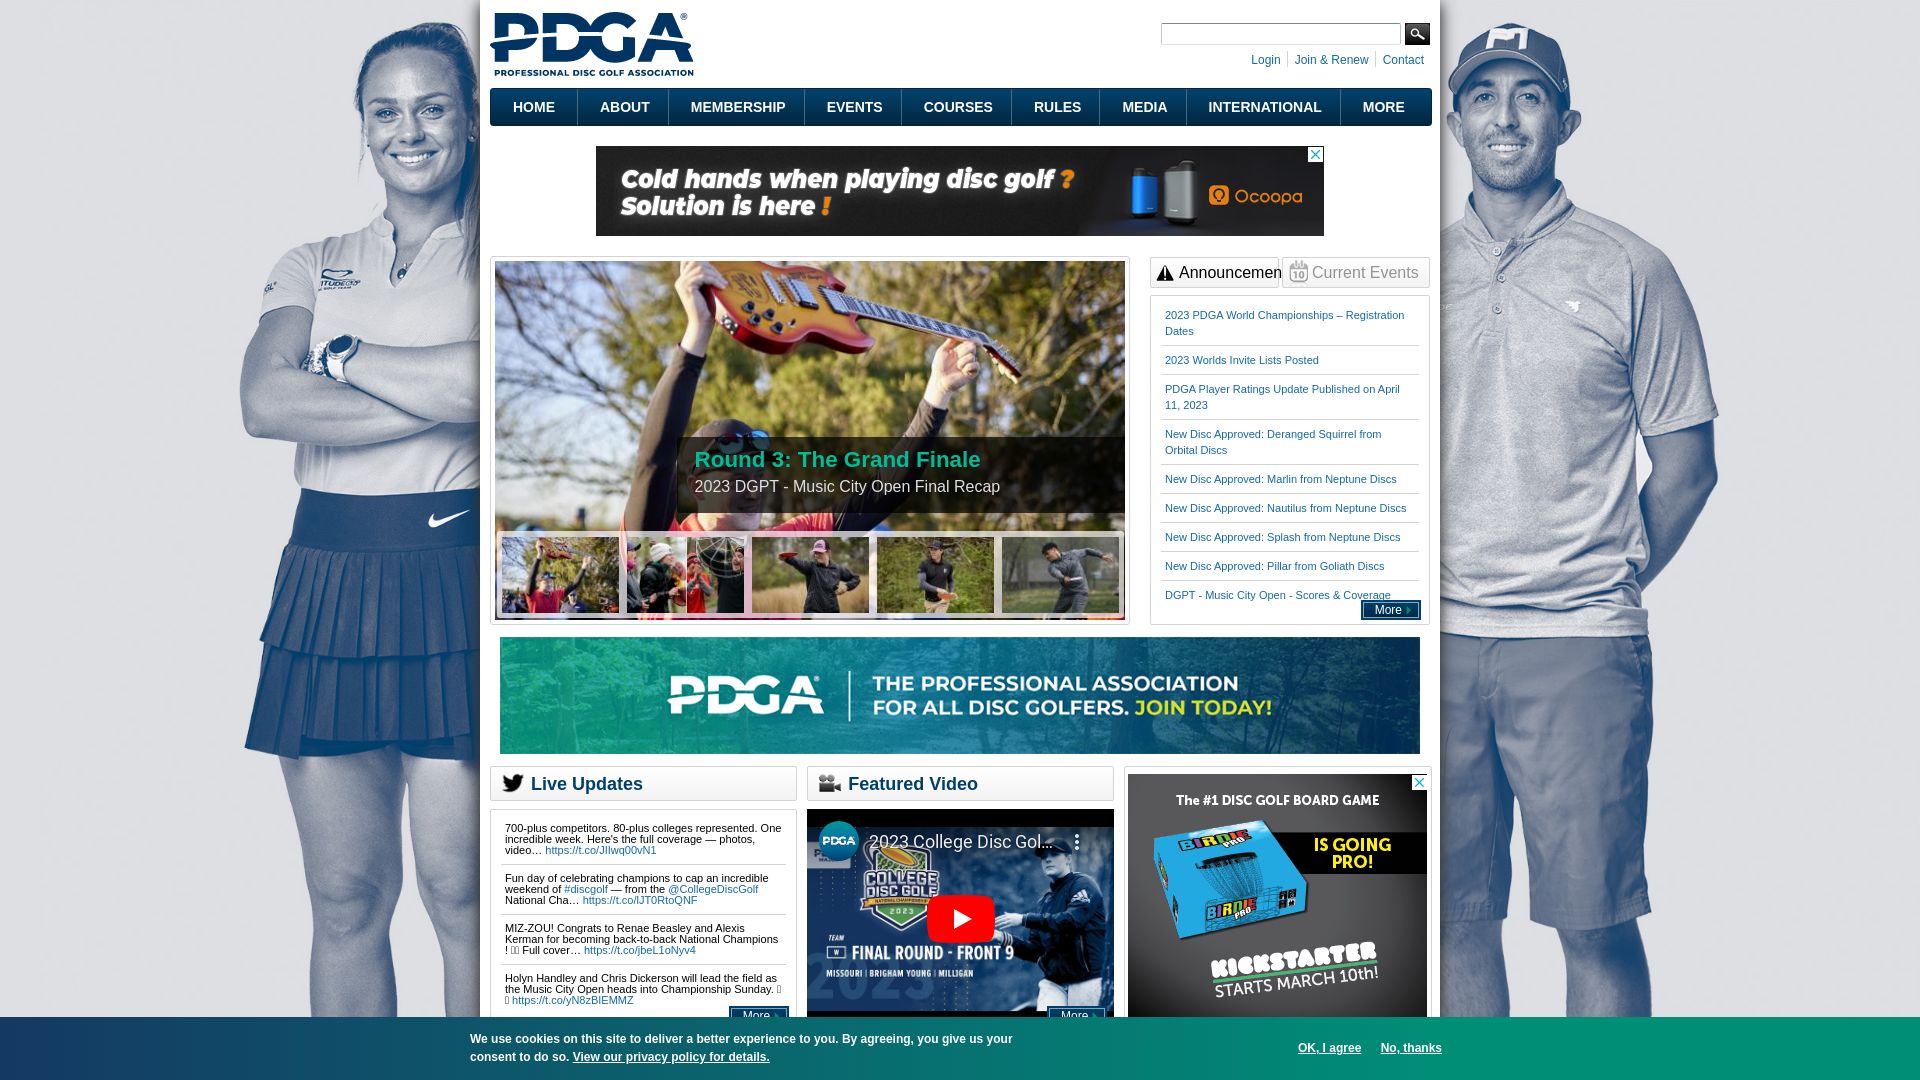 Stato del sito web pdga.com è   ONLINE